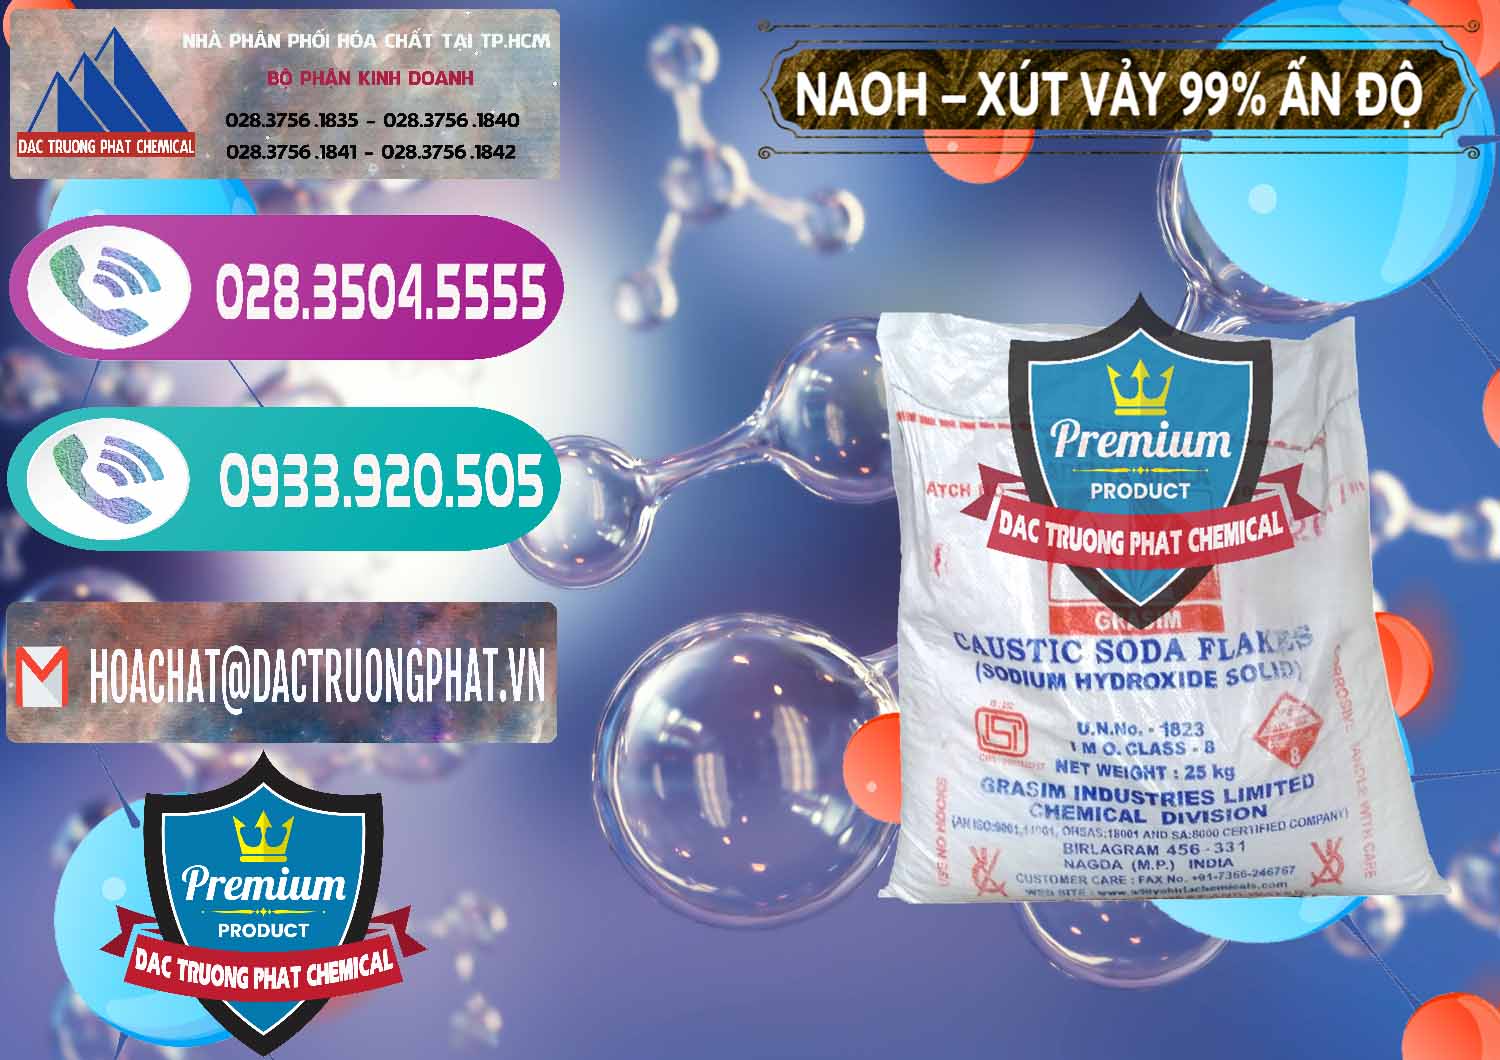 Nơi bán _ cung ứng Xút Vảy - NaOH Vảy 99% Aditya Birla Grasim Ấn Độ India - 0171 - Cty chuyên nhập khẩu - phân phối hóa chất tại TP.HCM - hoachatxulynuoc.com